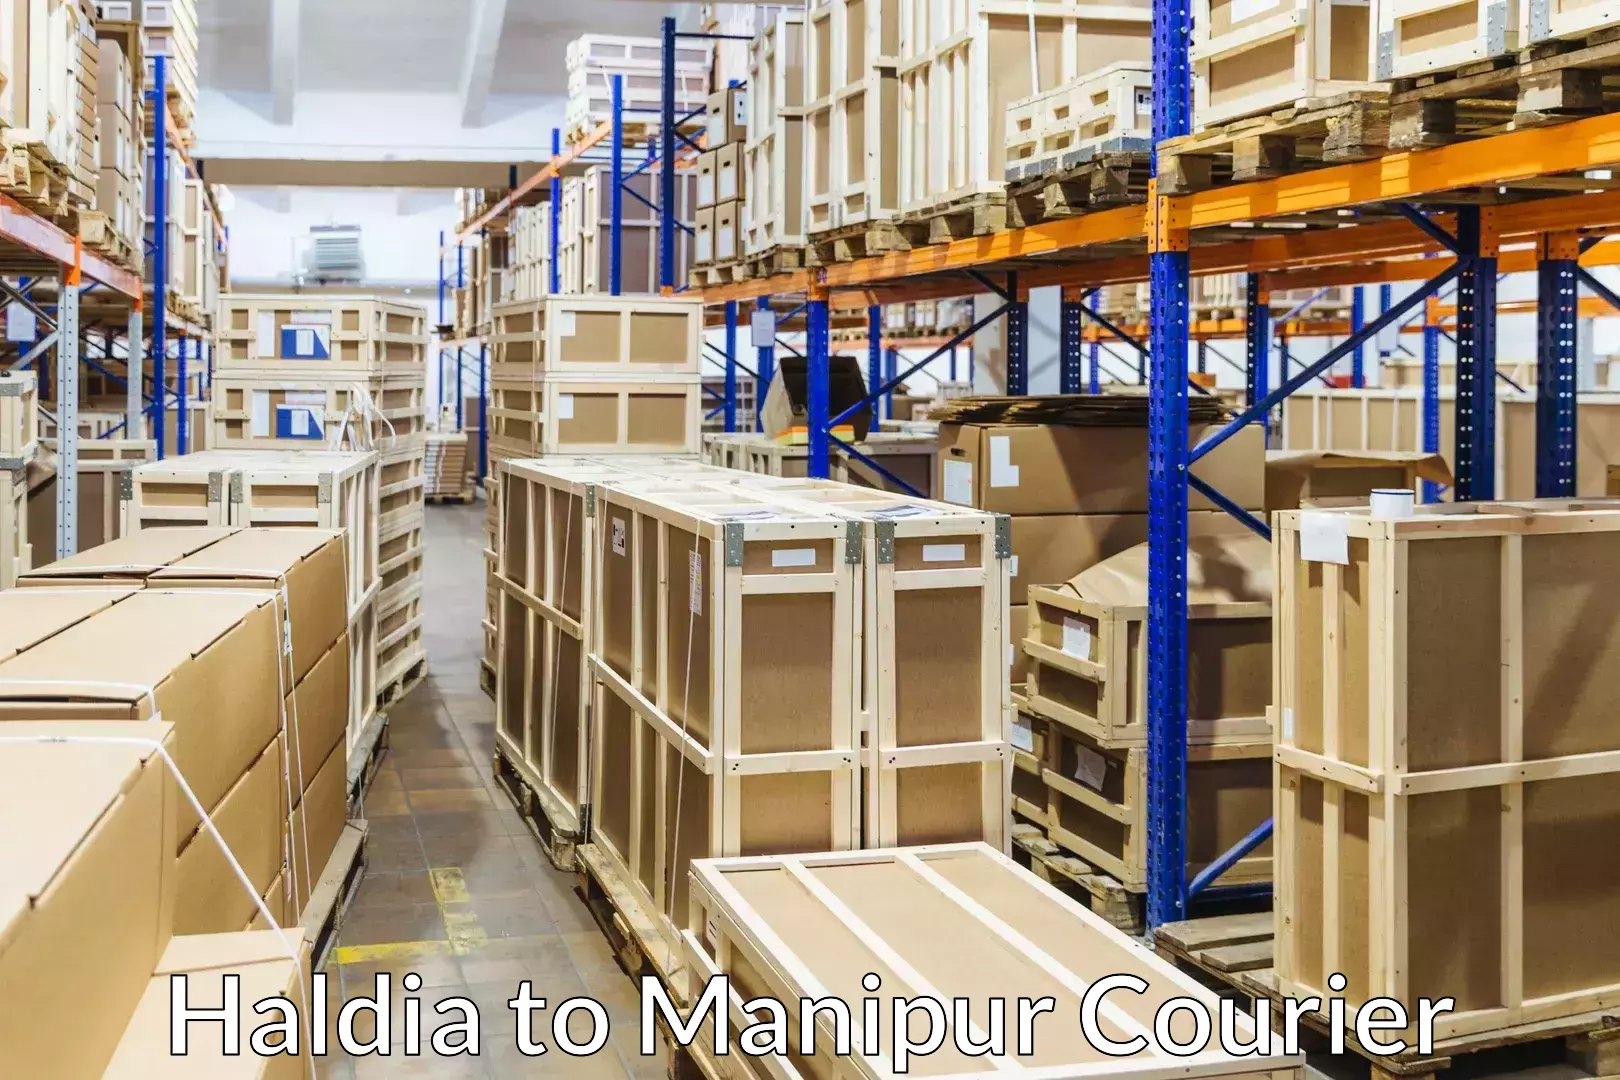 Furniture delivery service Haldia to Senapati